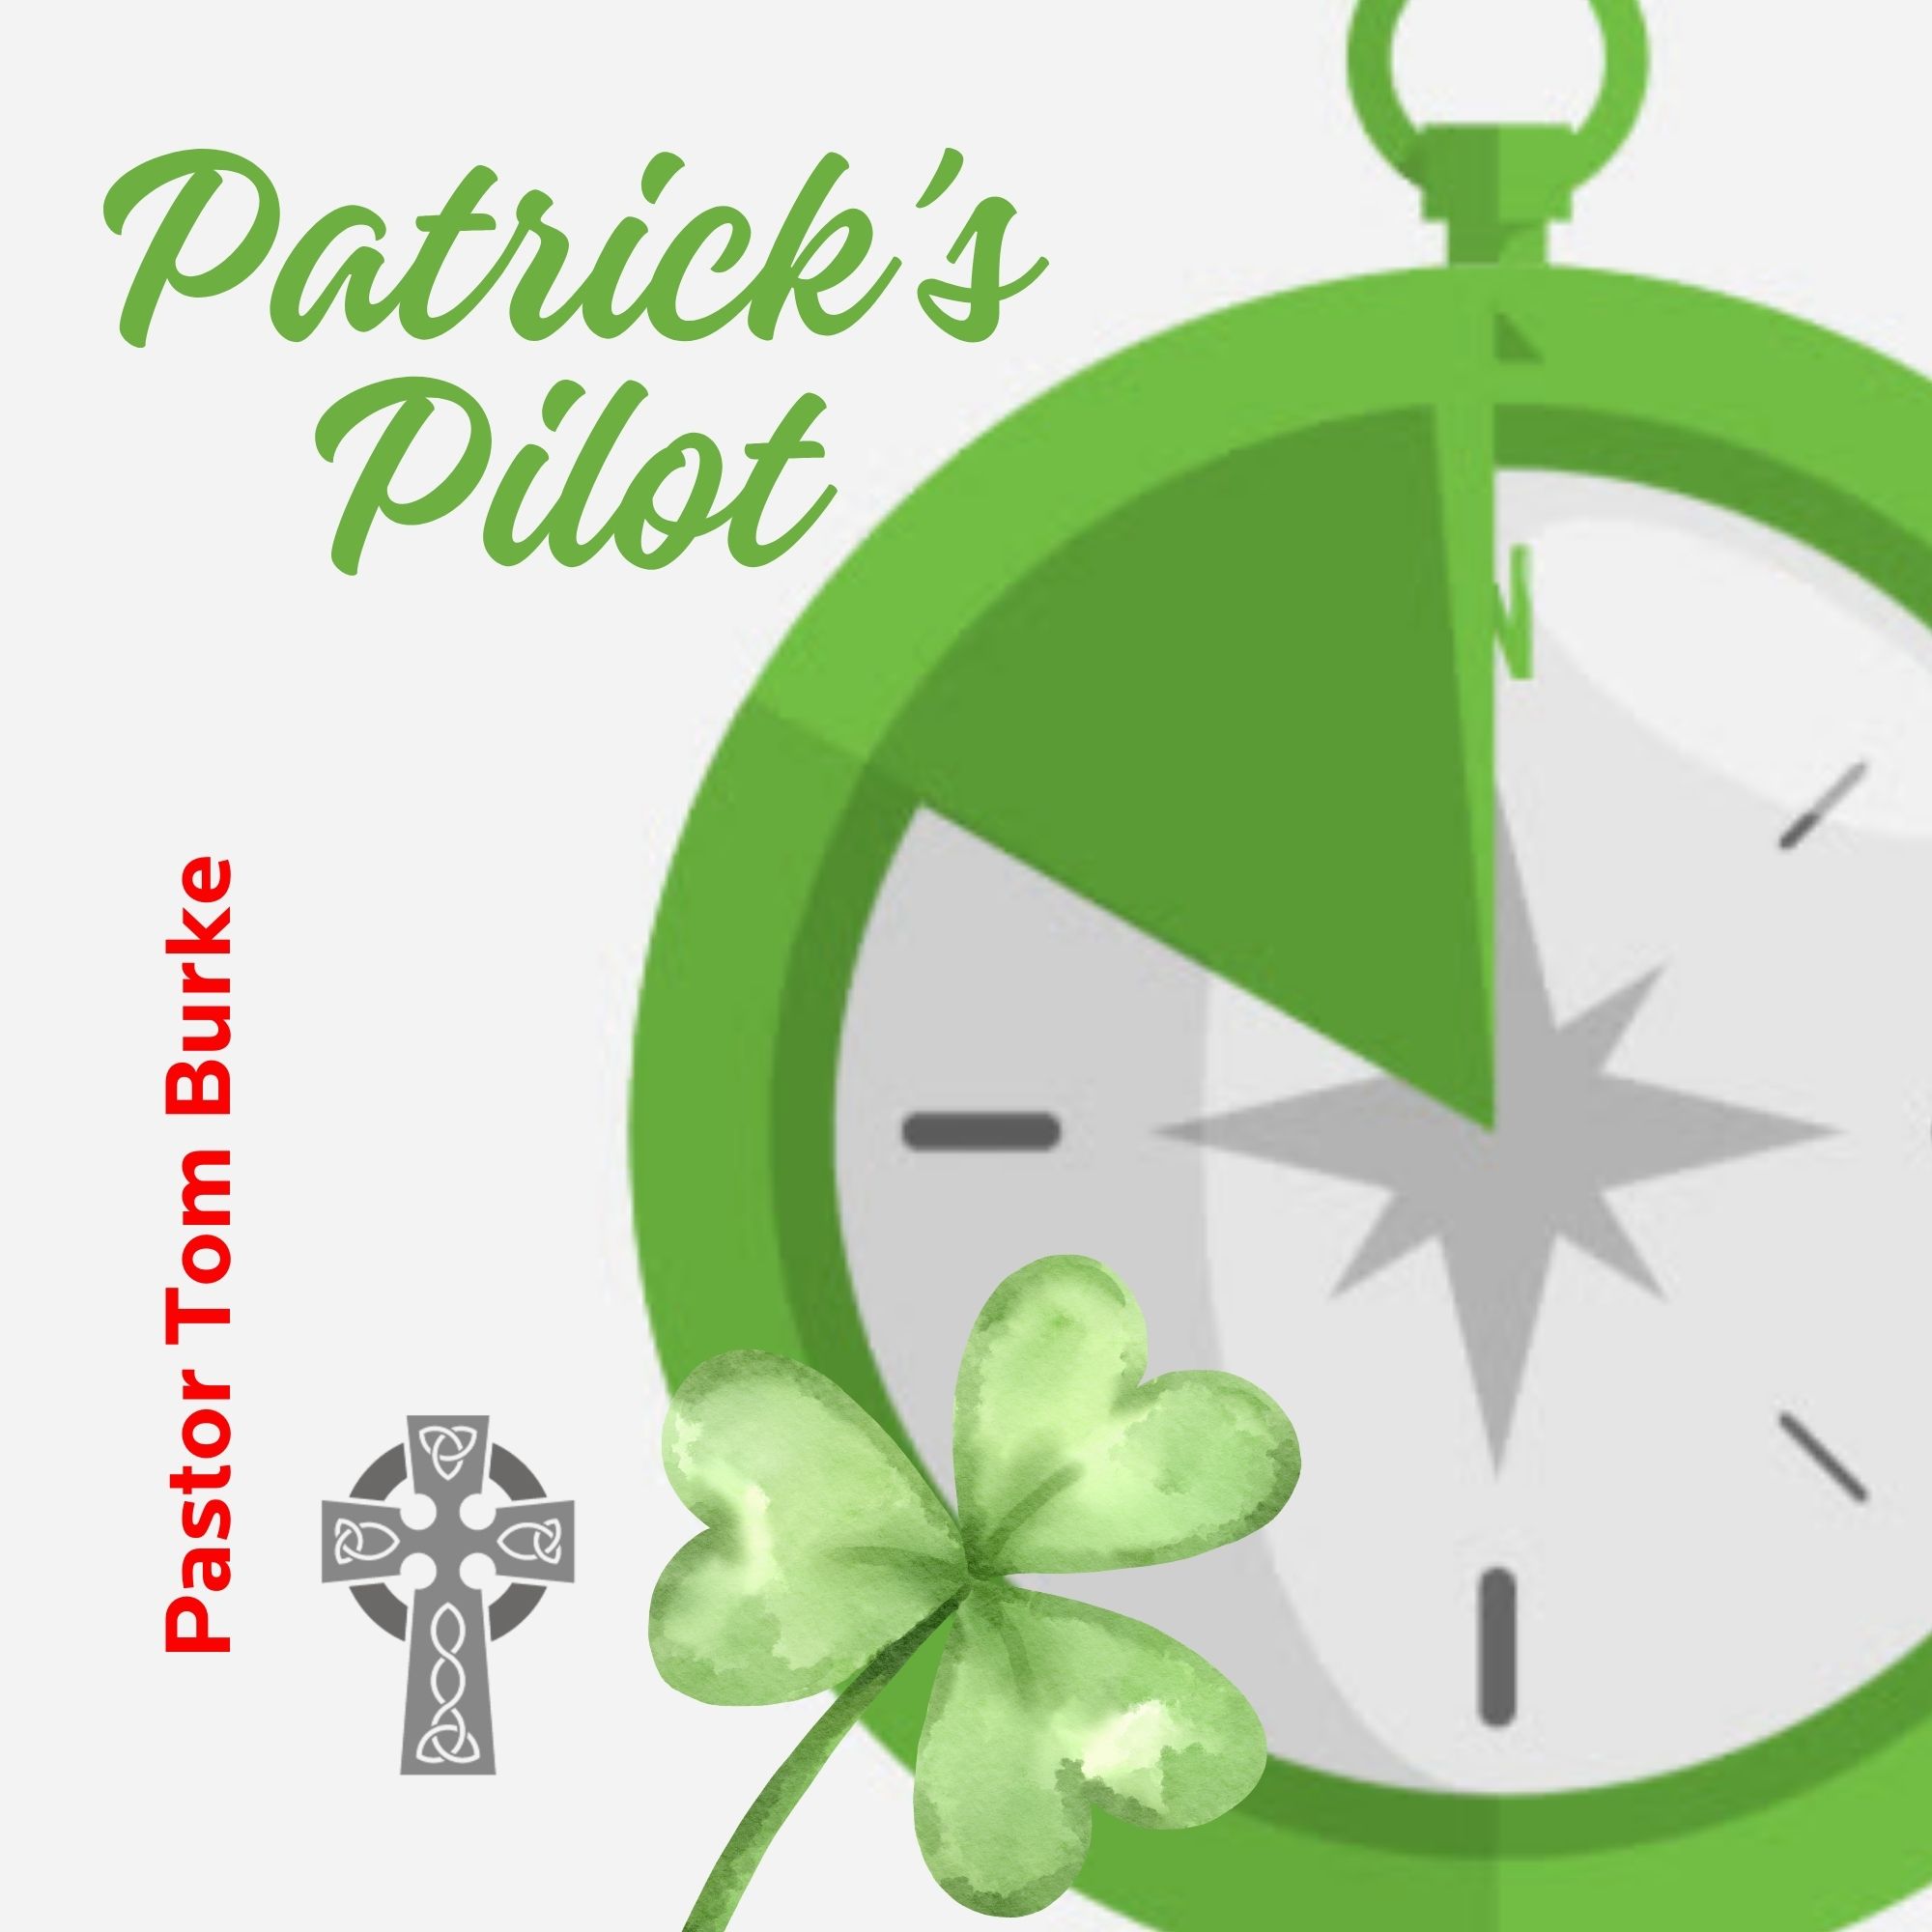 Patrick's Pilot - Pastor Tom Burke